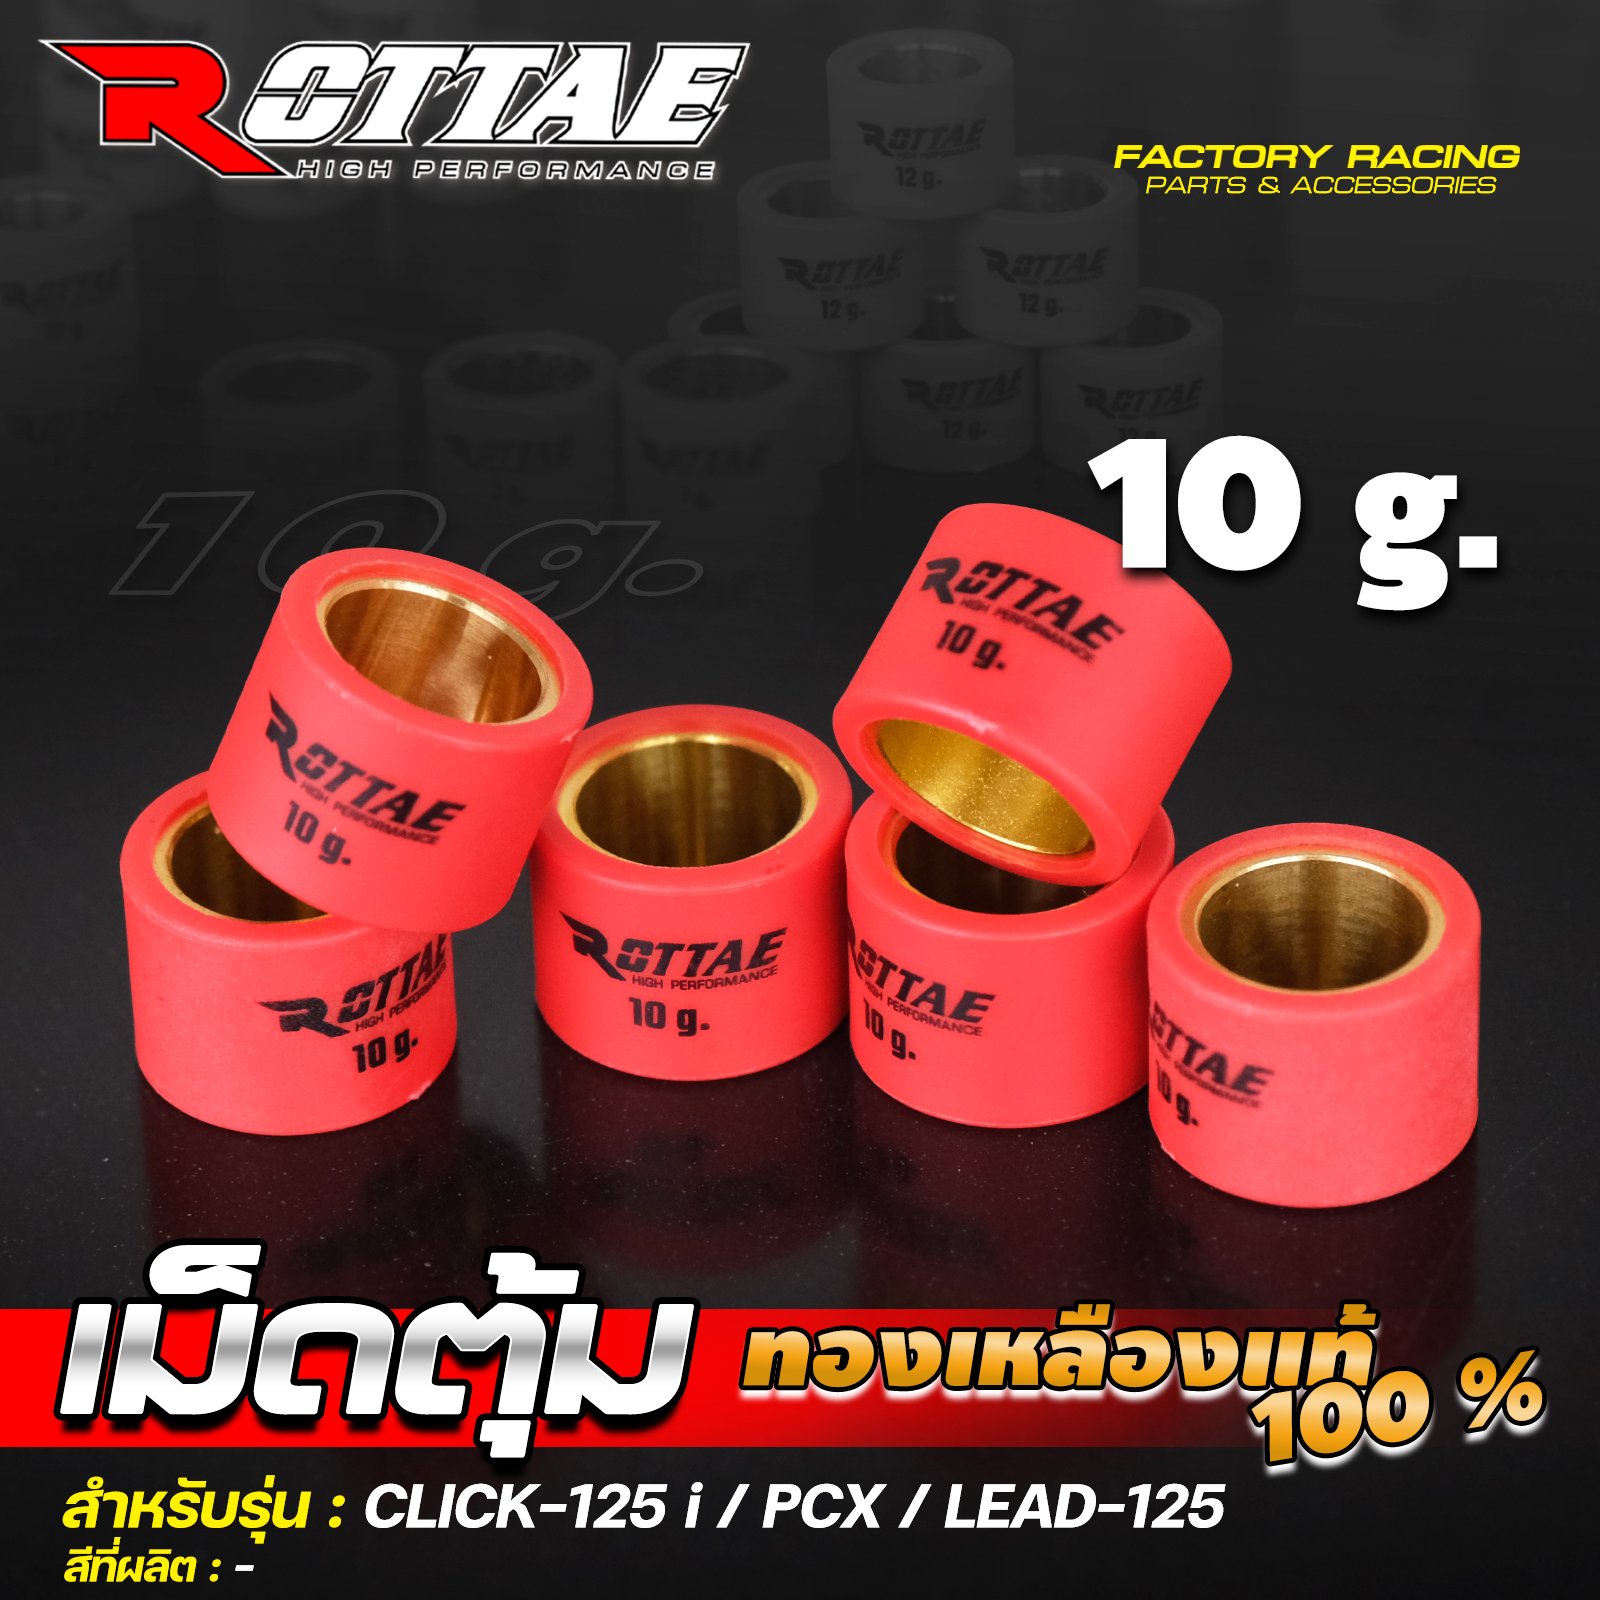 เม็ดตุ้ม (ทองเหลืองแท้ 100%) 10 g. #CLICK-125 / PCX / LEAD-125 ROTTAE